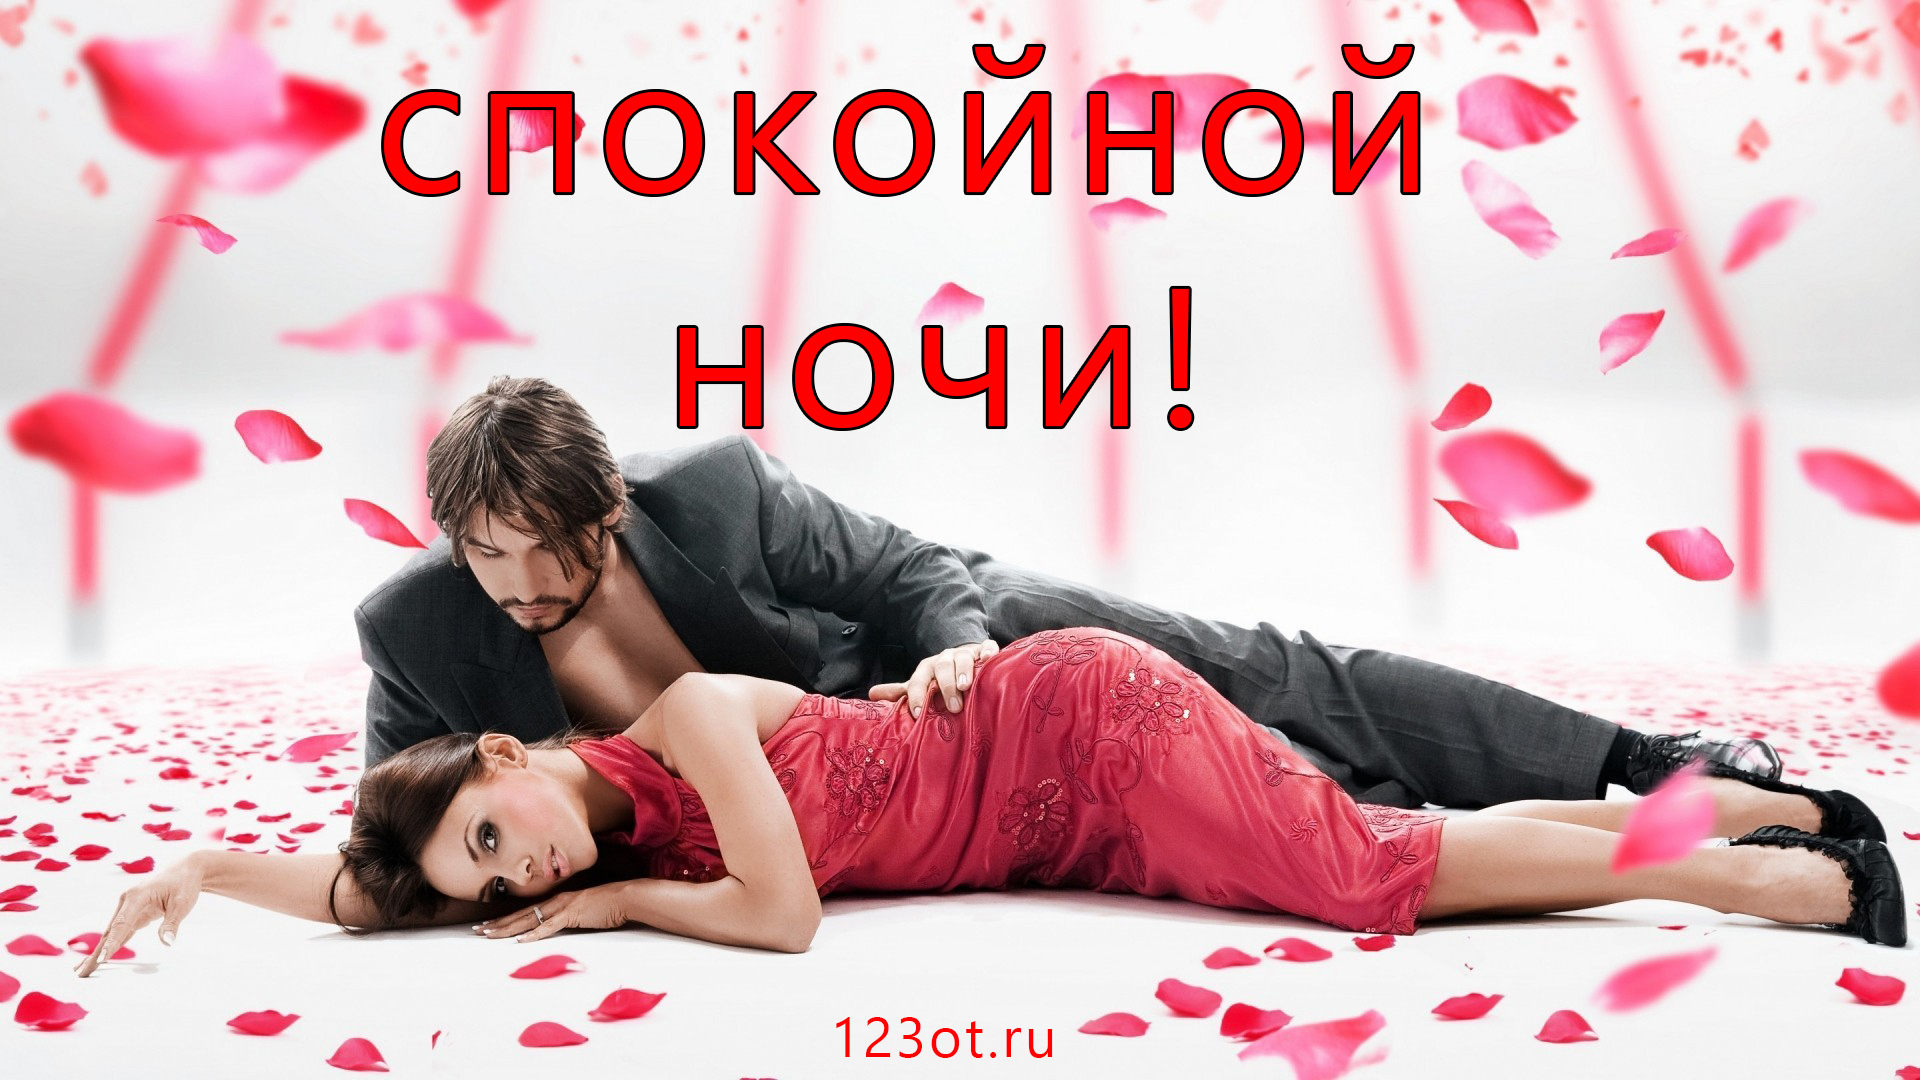 Спокойной ночи!  Дарите восторг! Романтичная открытка с мужчиной в черном костюме и женщиной в красном платье!  Распечатать пожелание! Скачайте открытку бесплатно для WhatsApp и соц сетей!  Популярные открытки. Отправить родному человеку!  